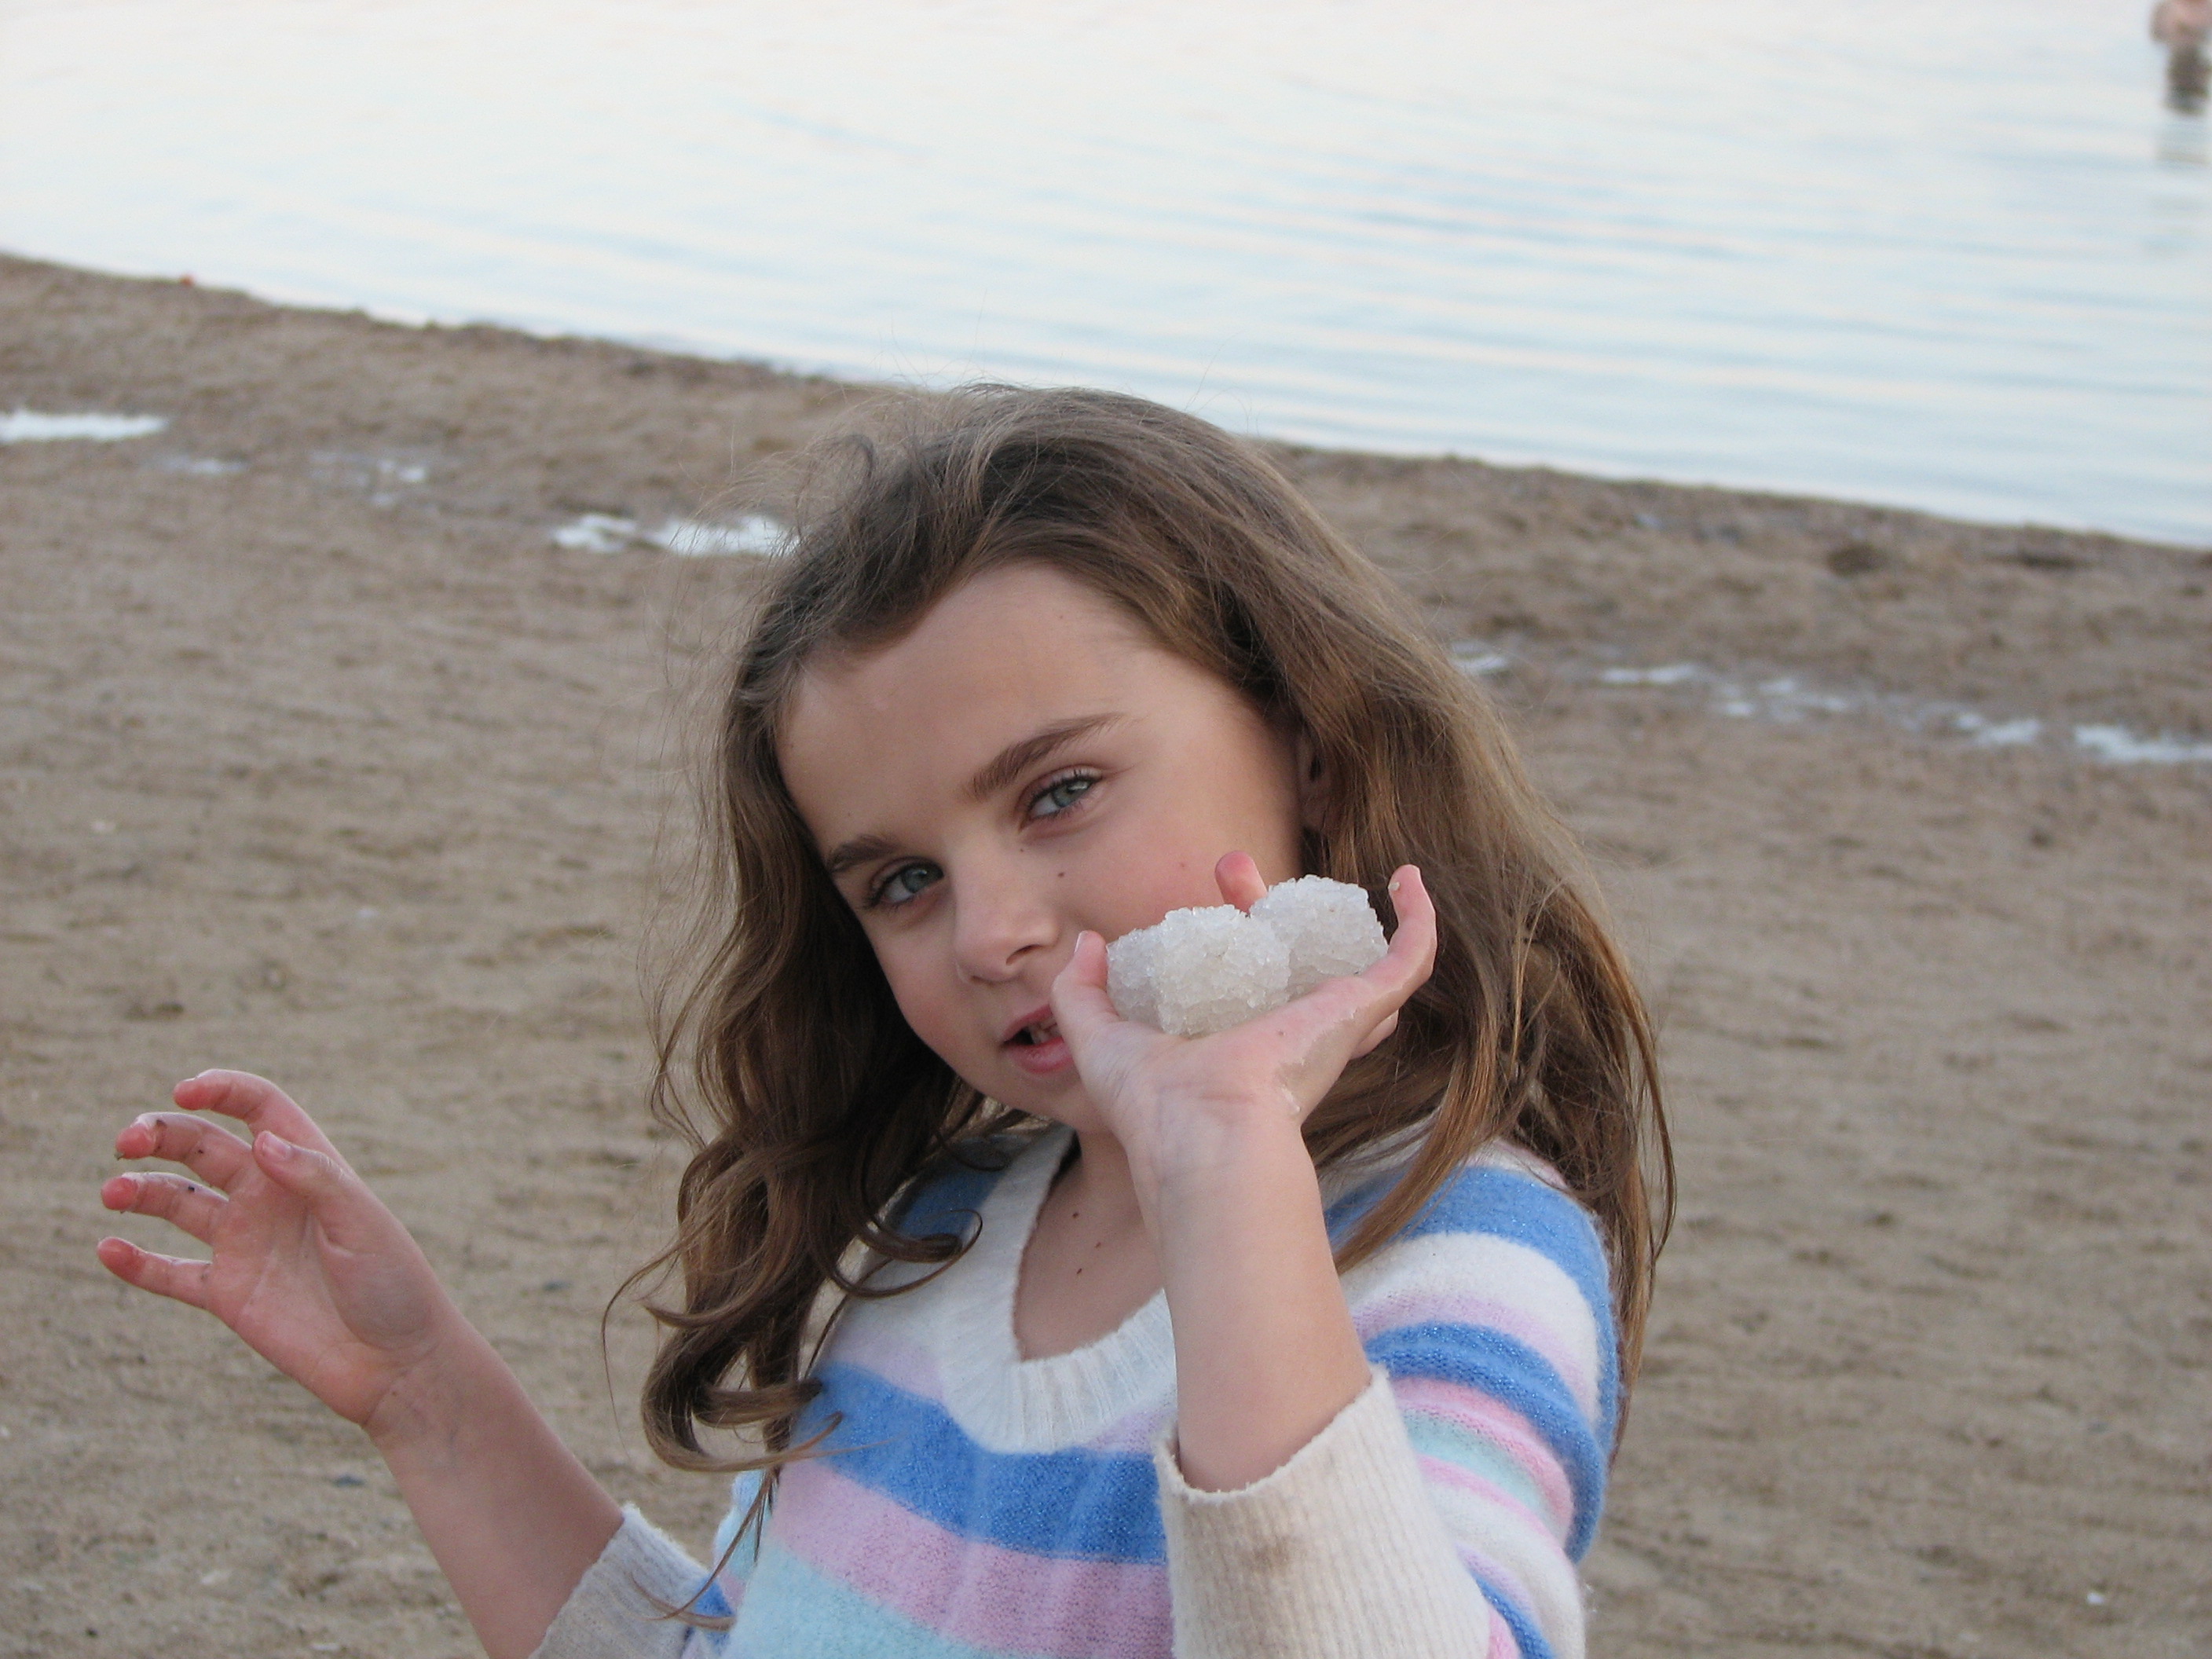 Rachel holding salt crystals at the Dead Sea